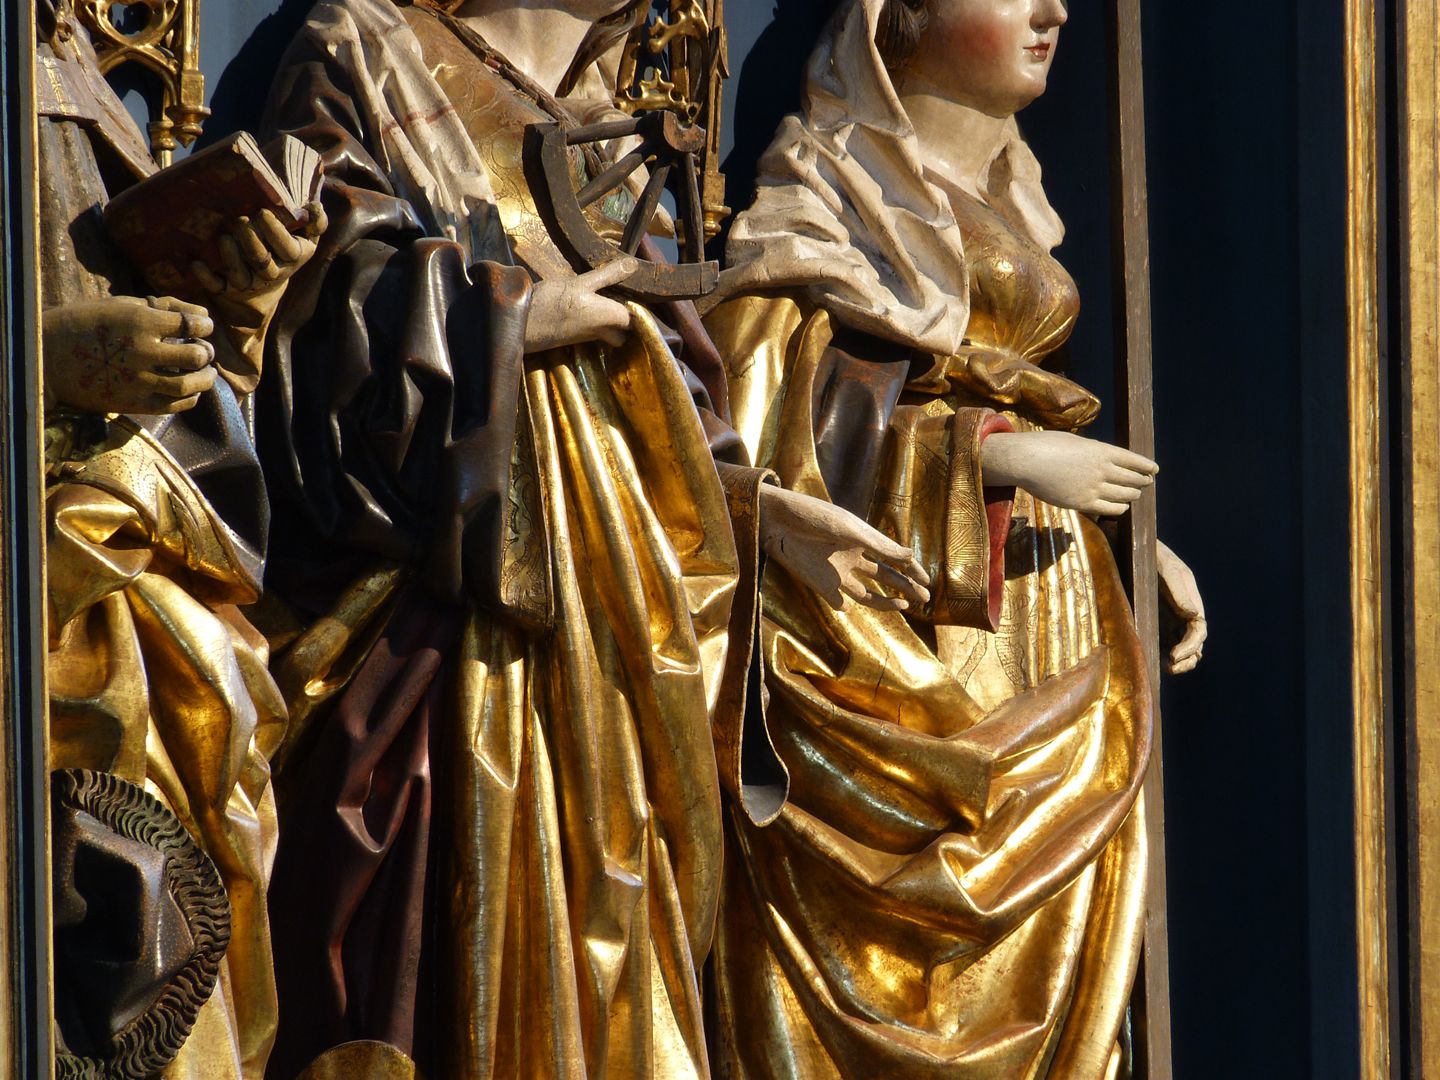 St Catherine's reredos of Levinus Memminger Garment folds of the shrine figures, detail